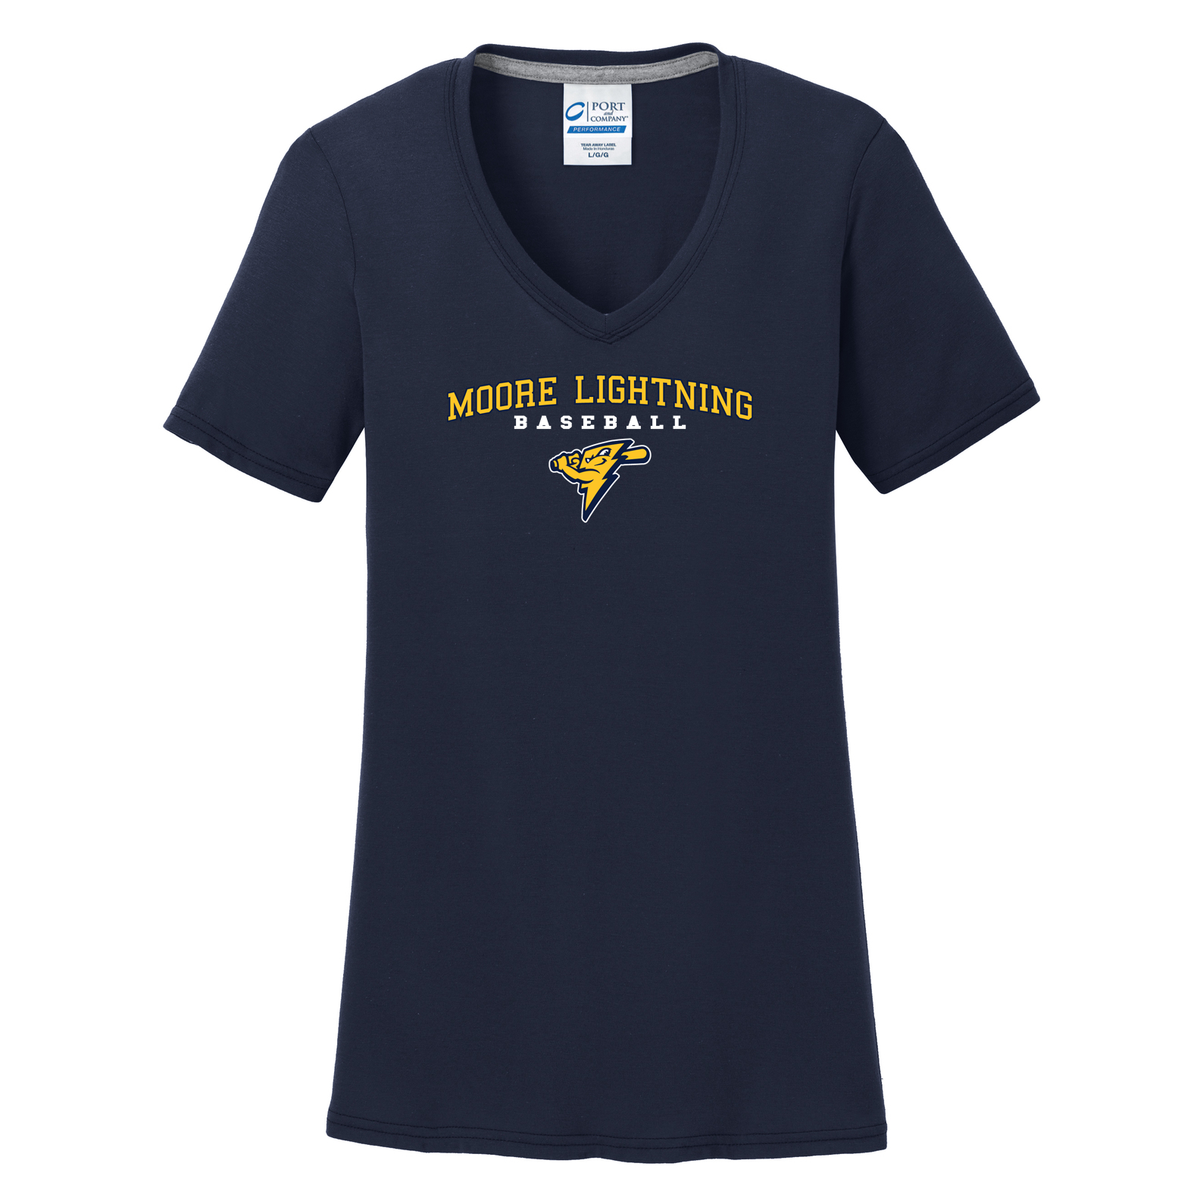 Moore Lightning Baseball  Women's T-Shirt